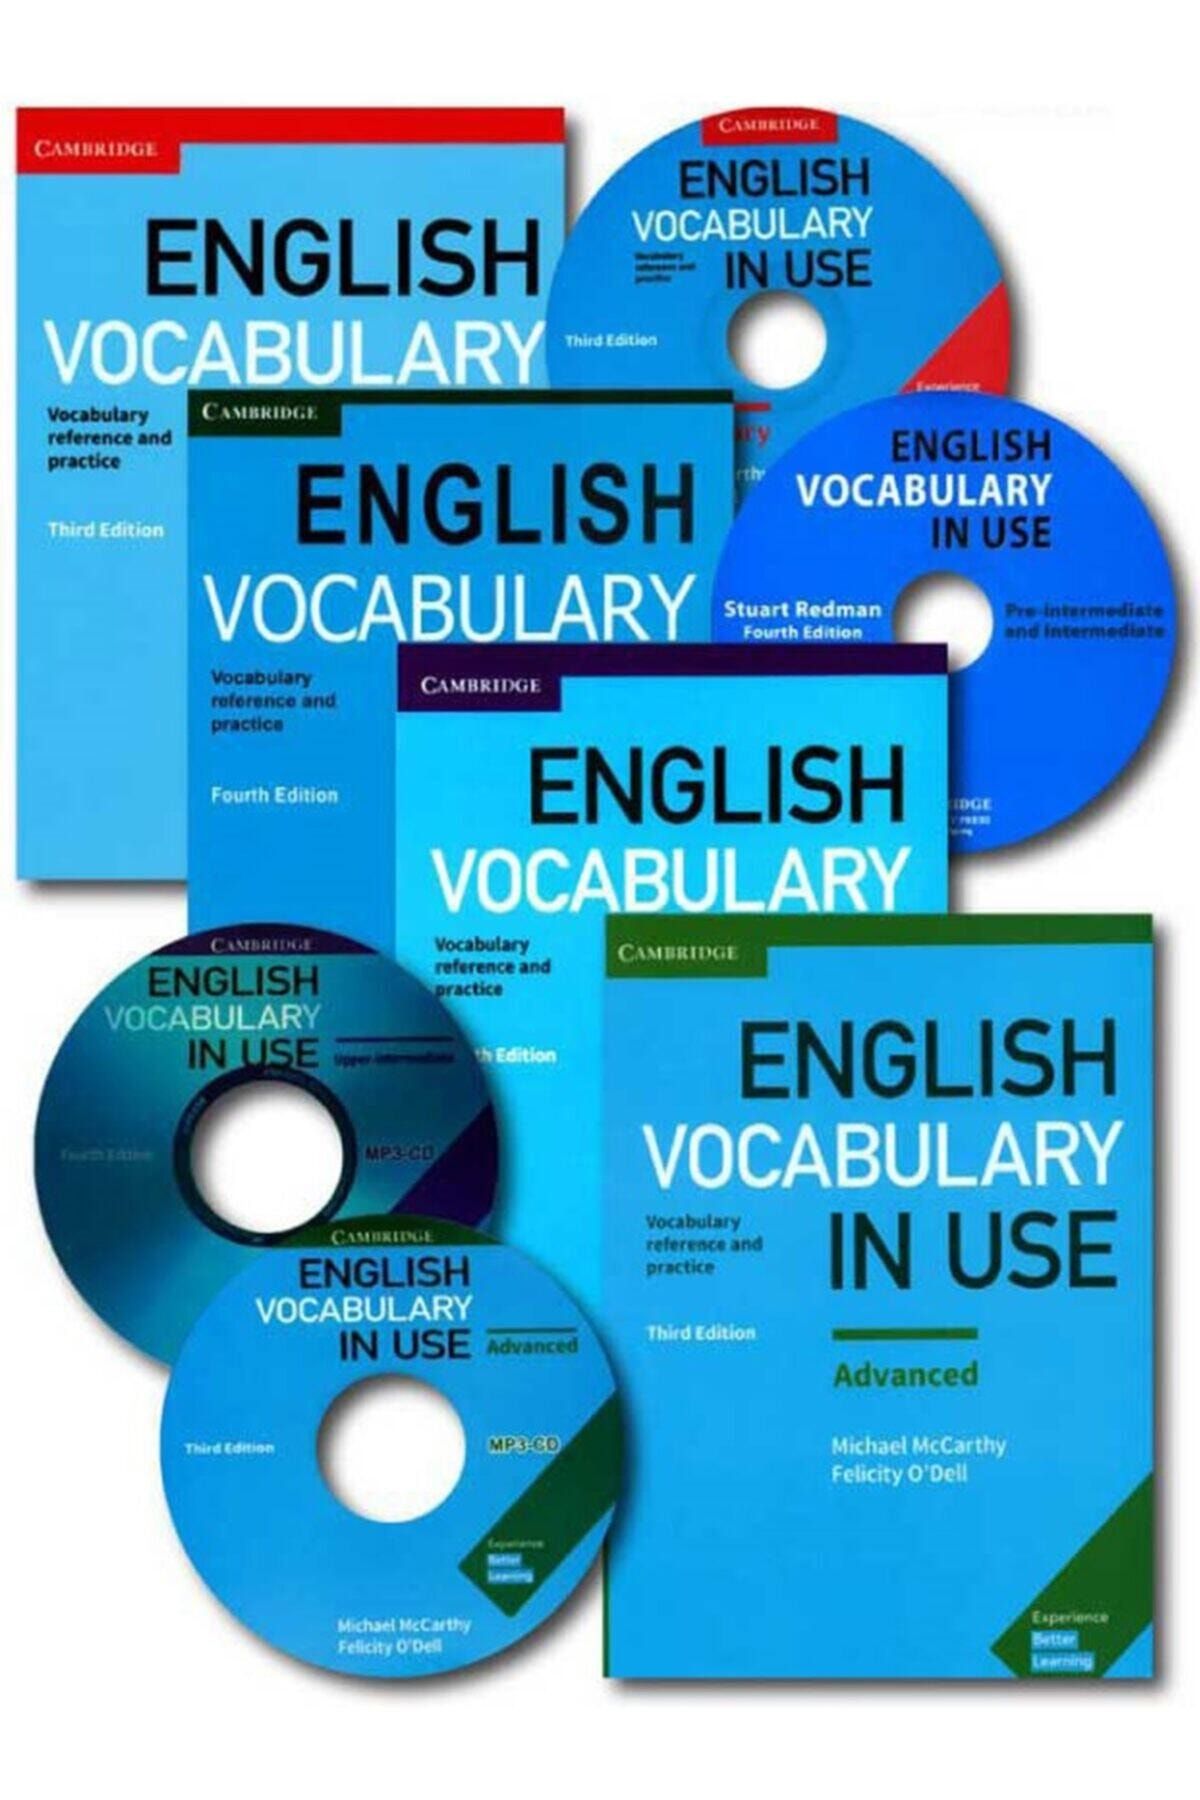 Test english vocabulary in use. English Vocabulary in use. English Vocabulary in use Intermediate. Vocabulary in use Advanced. English Vocabulary in use Elementary.